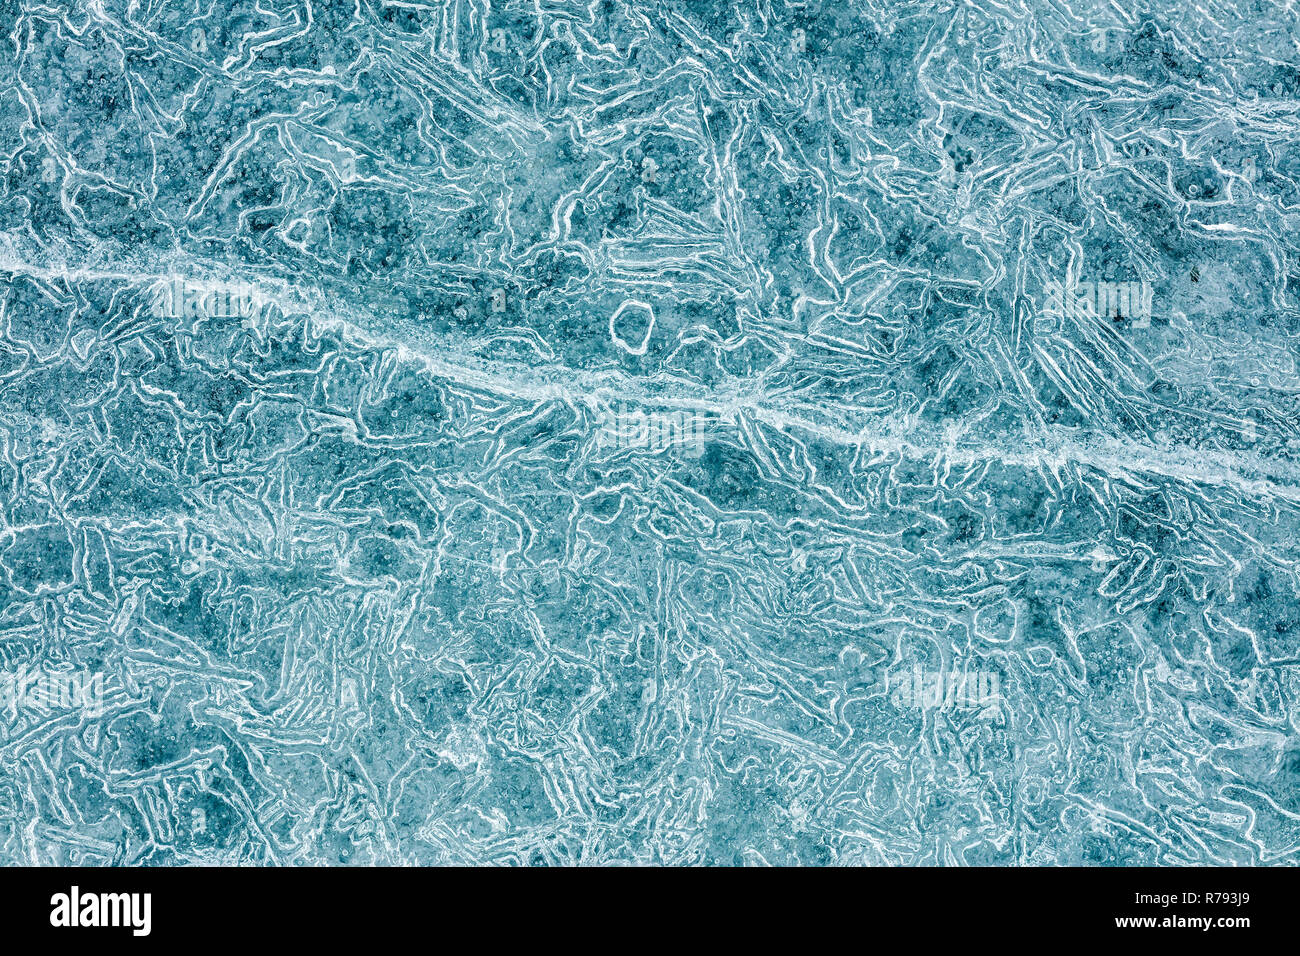 Makro Blick auf Eis block Struktur Muster. Winter texturierter Hintergrund Stockfoto